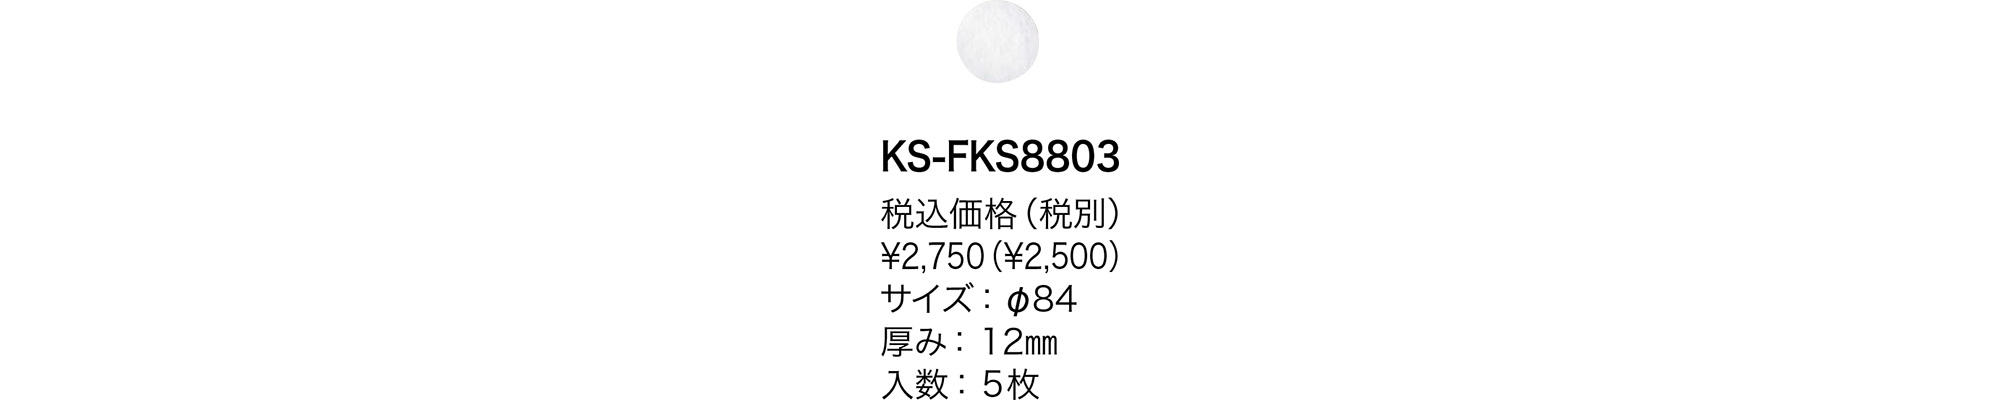 花粉除去用フィルター KS-FKS8803 | 換気口関連品・メンテナンス品 | 製品情報 | 株式会社ナスタ